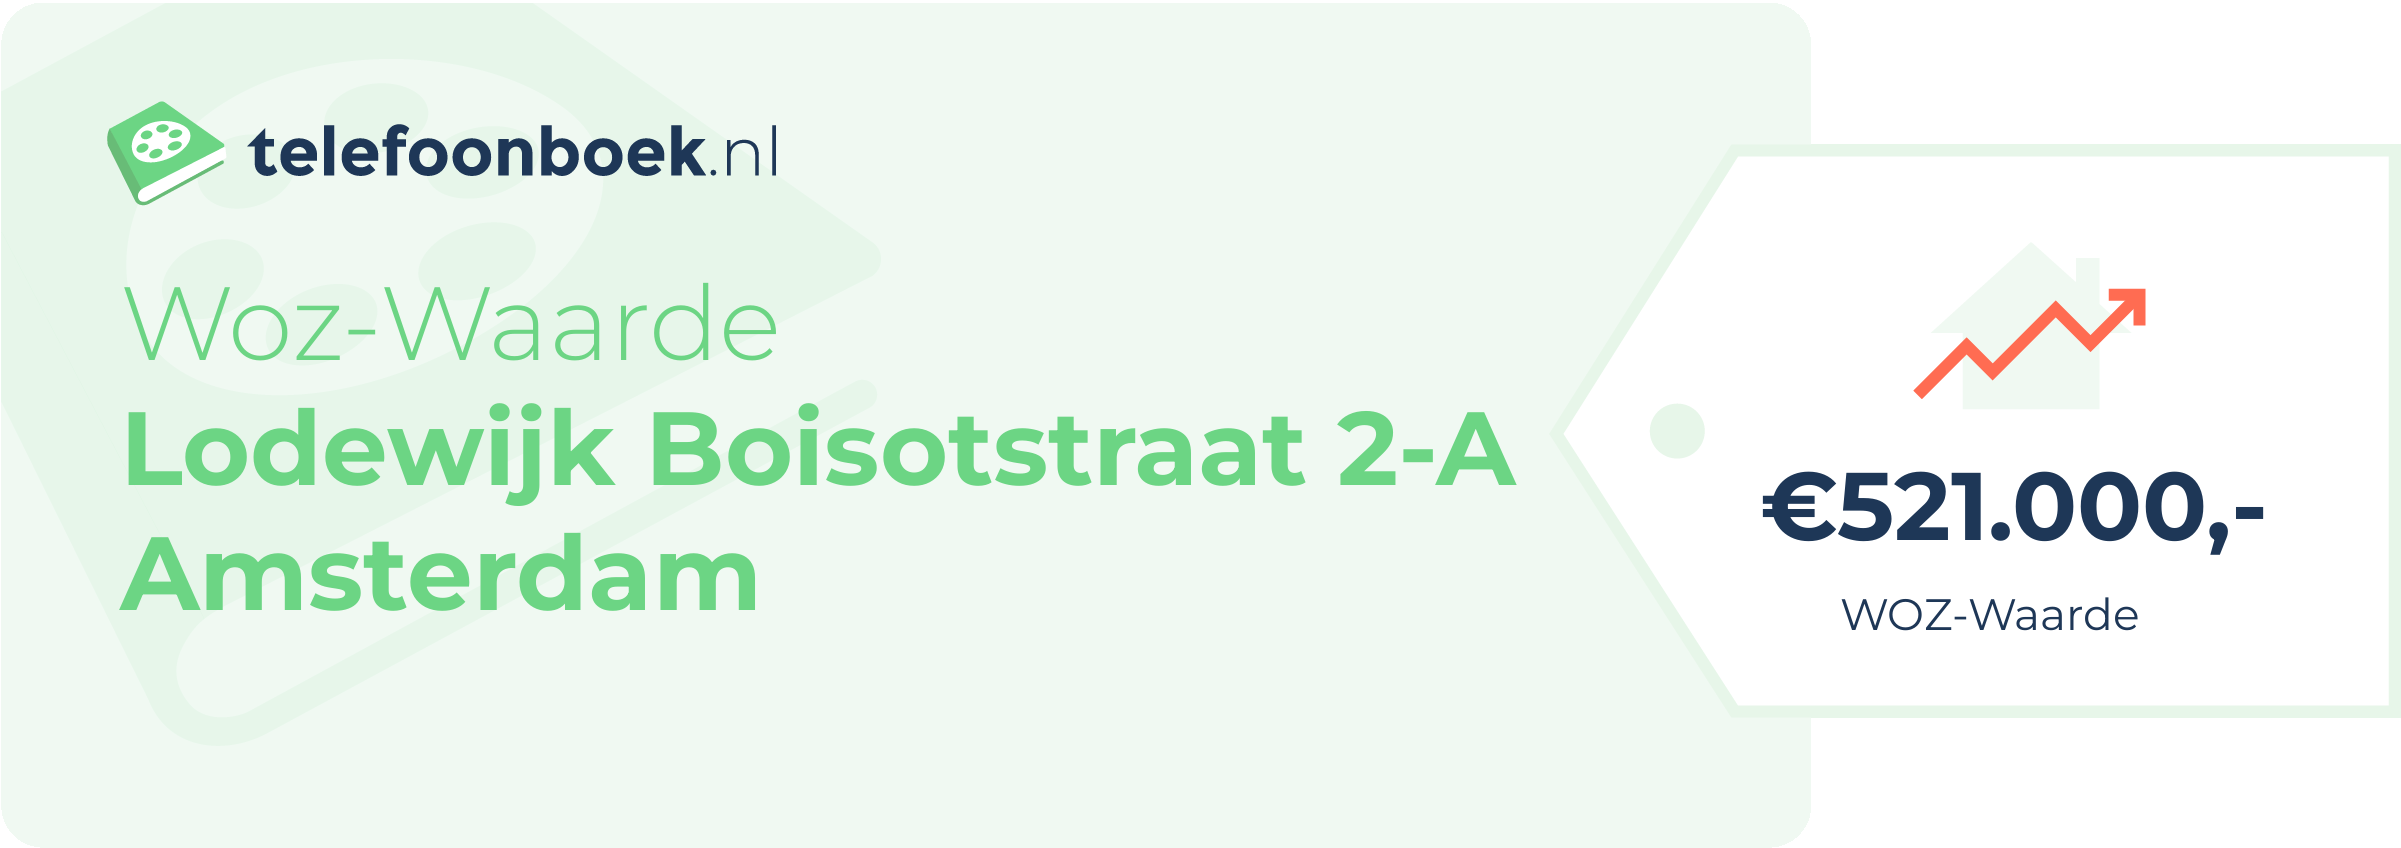 WOZ-waarde Lodewijk Boisotstraat 2-A Amsterdam